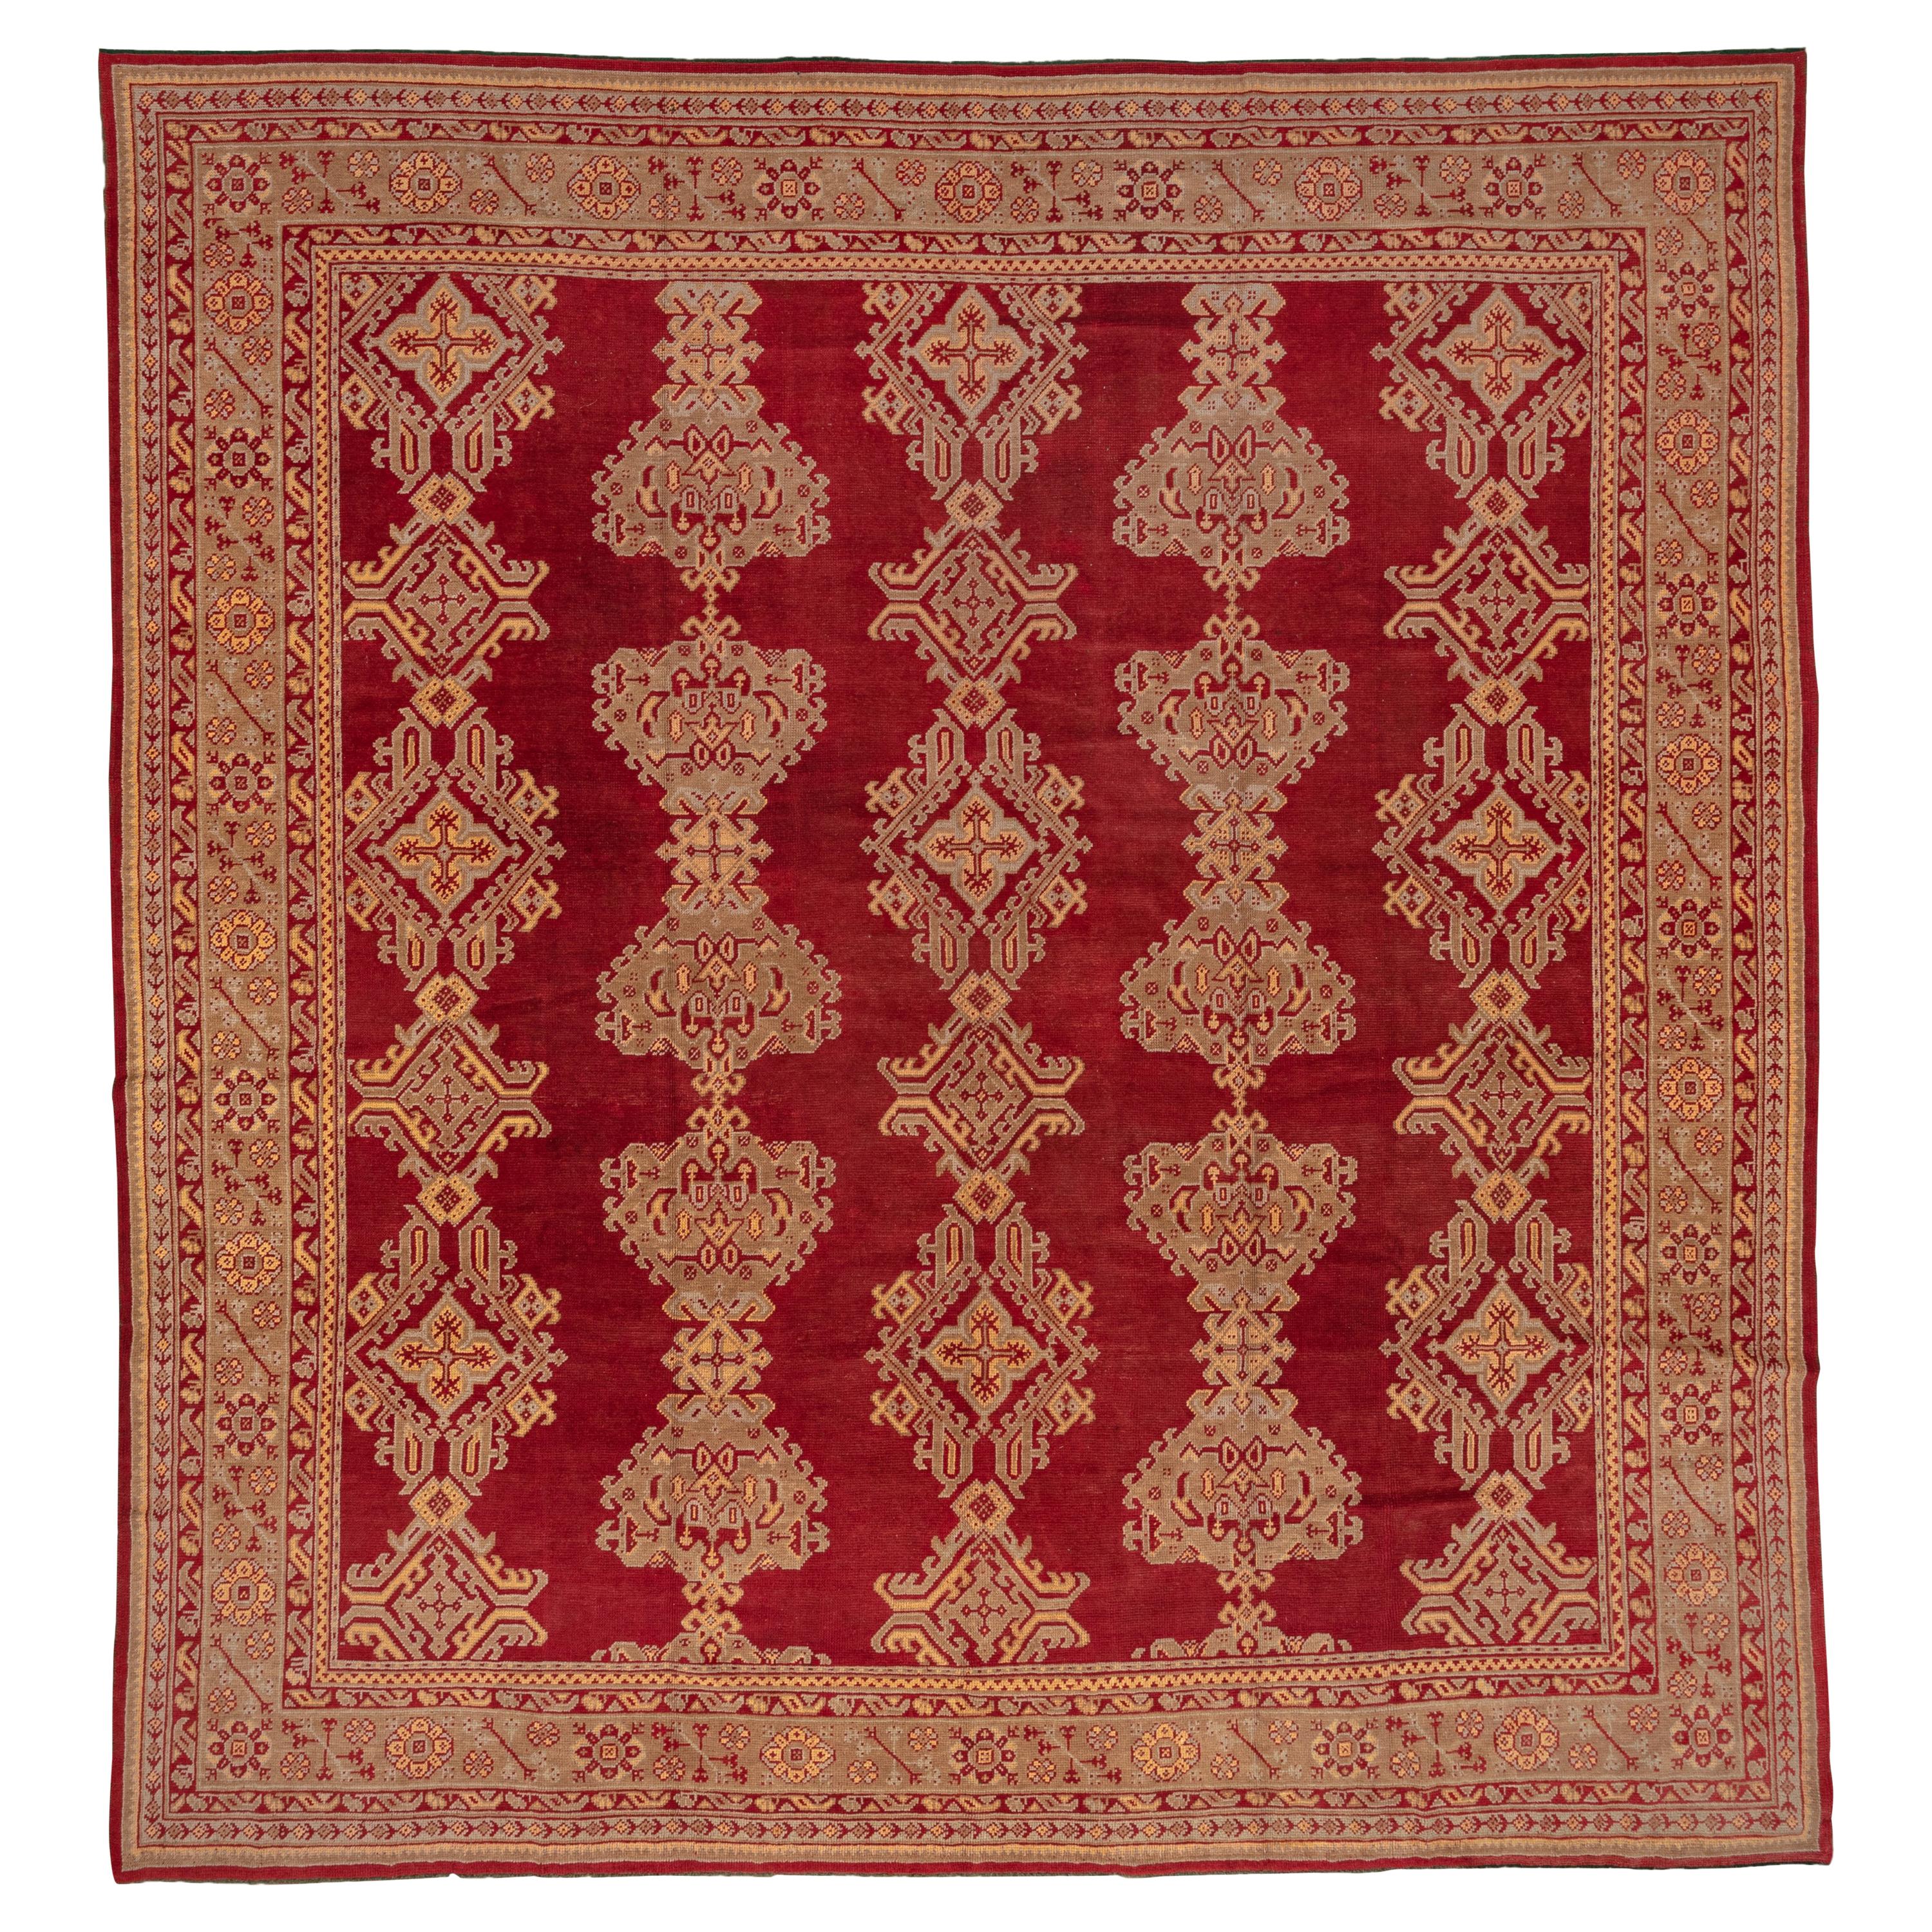 Ancien tapis turc carré en laine Oushak, terrain rouge entièrement recouvert de laine, vers 1920